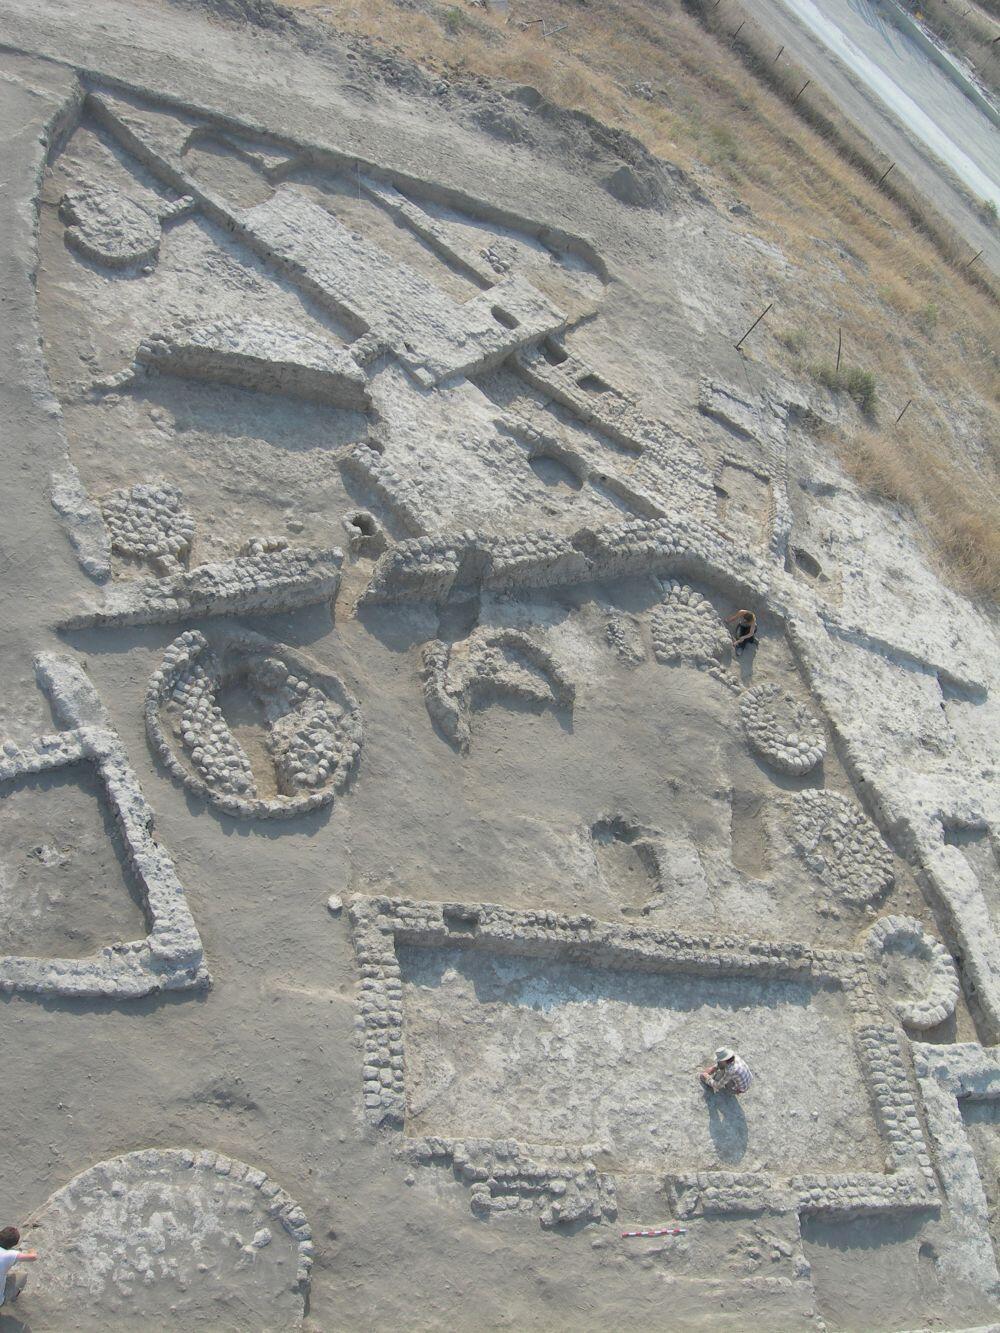 שרידי מבנים וממגורות באתר הכלכוליתי תל צף שמדרום לבית שאן.